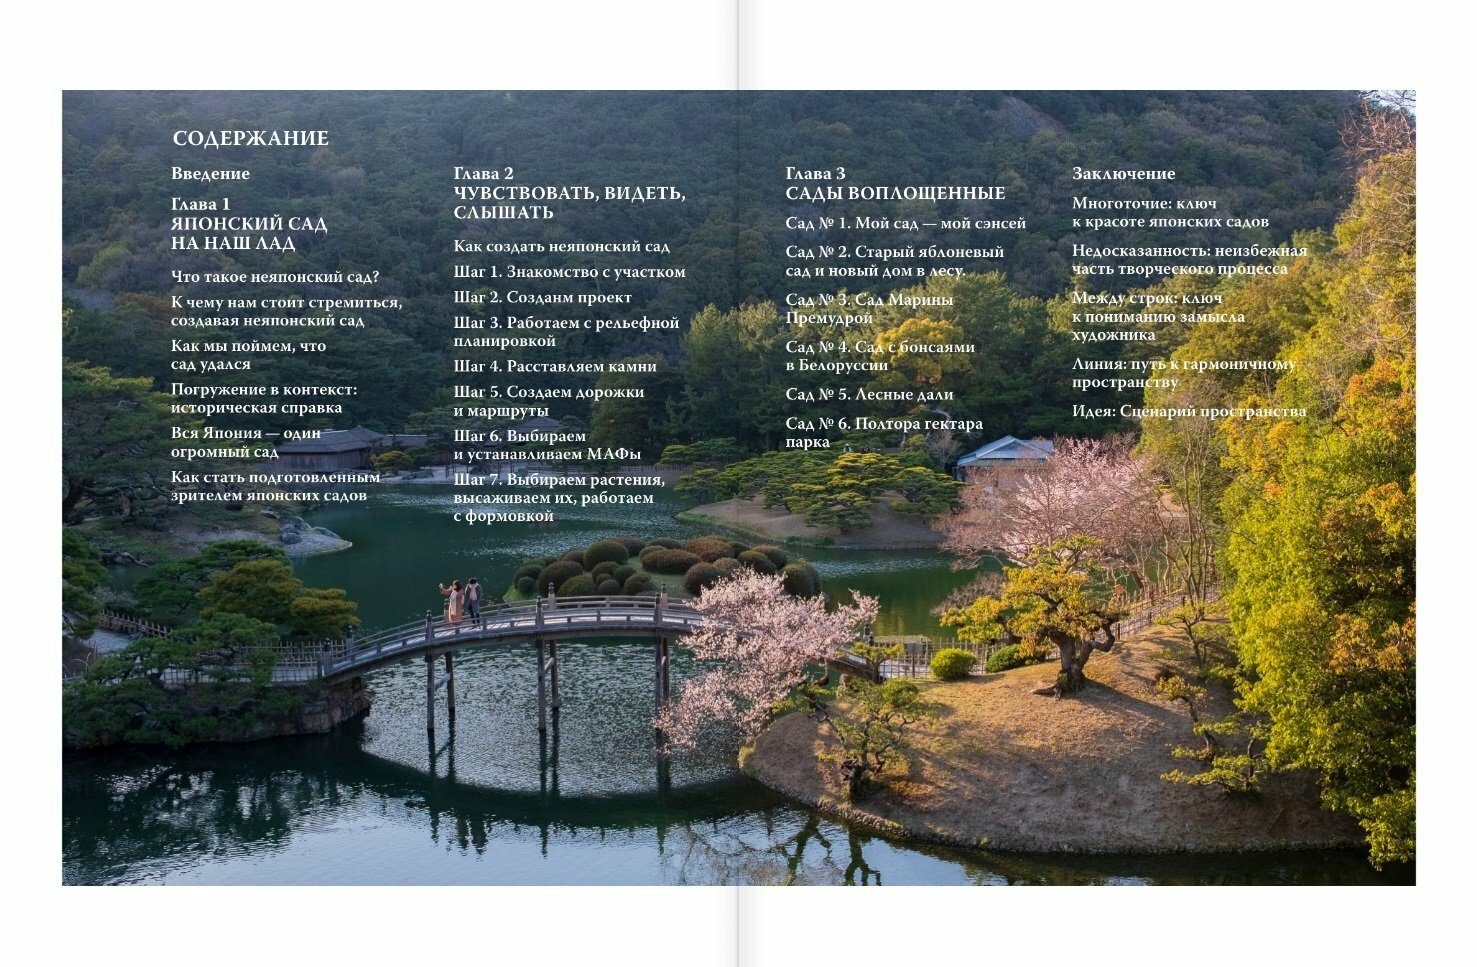 Сад в японском стиле — воплощение красоты и практичности - фото №6